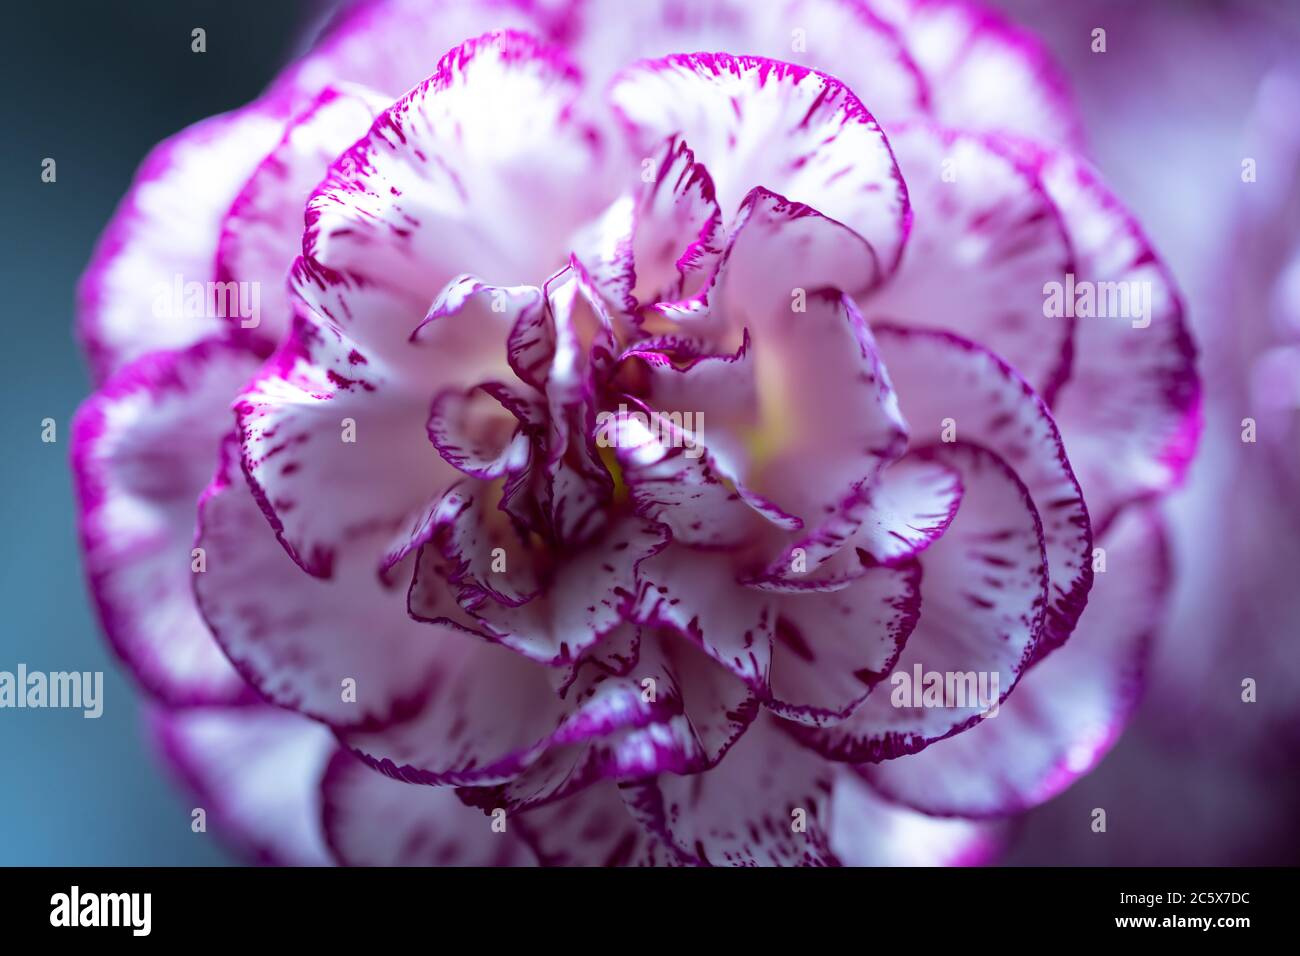 Eine Nahaufnahme einer rosa/lila und weiß doppelt gestreiften Nelke (Dianthus caryophyllus) Blume Stockfoto